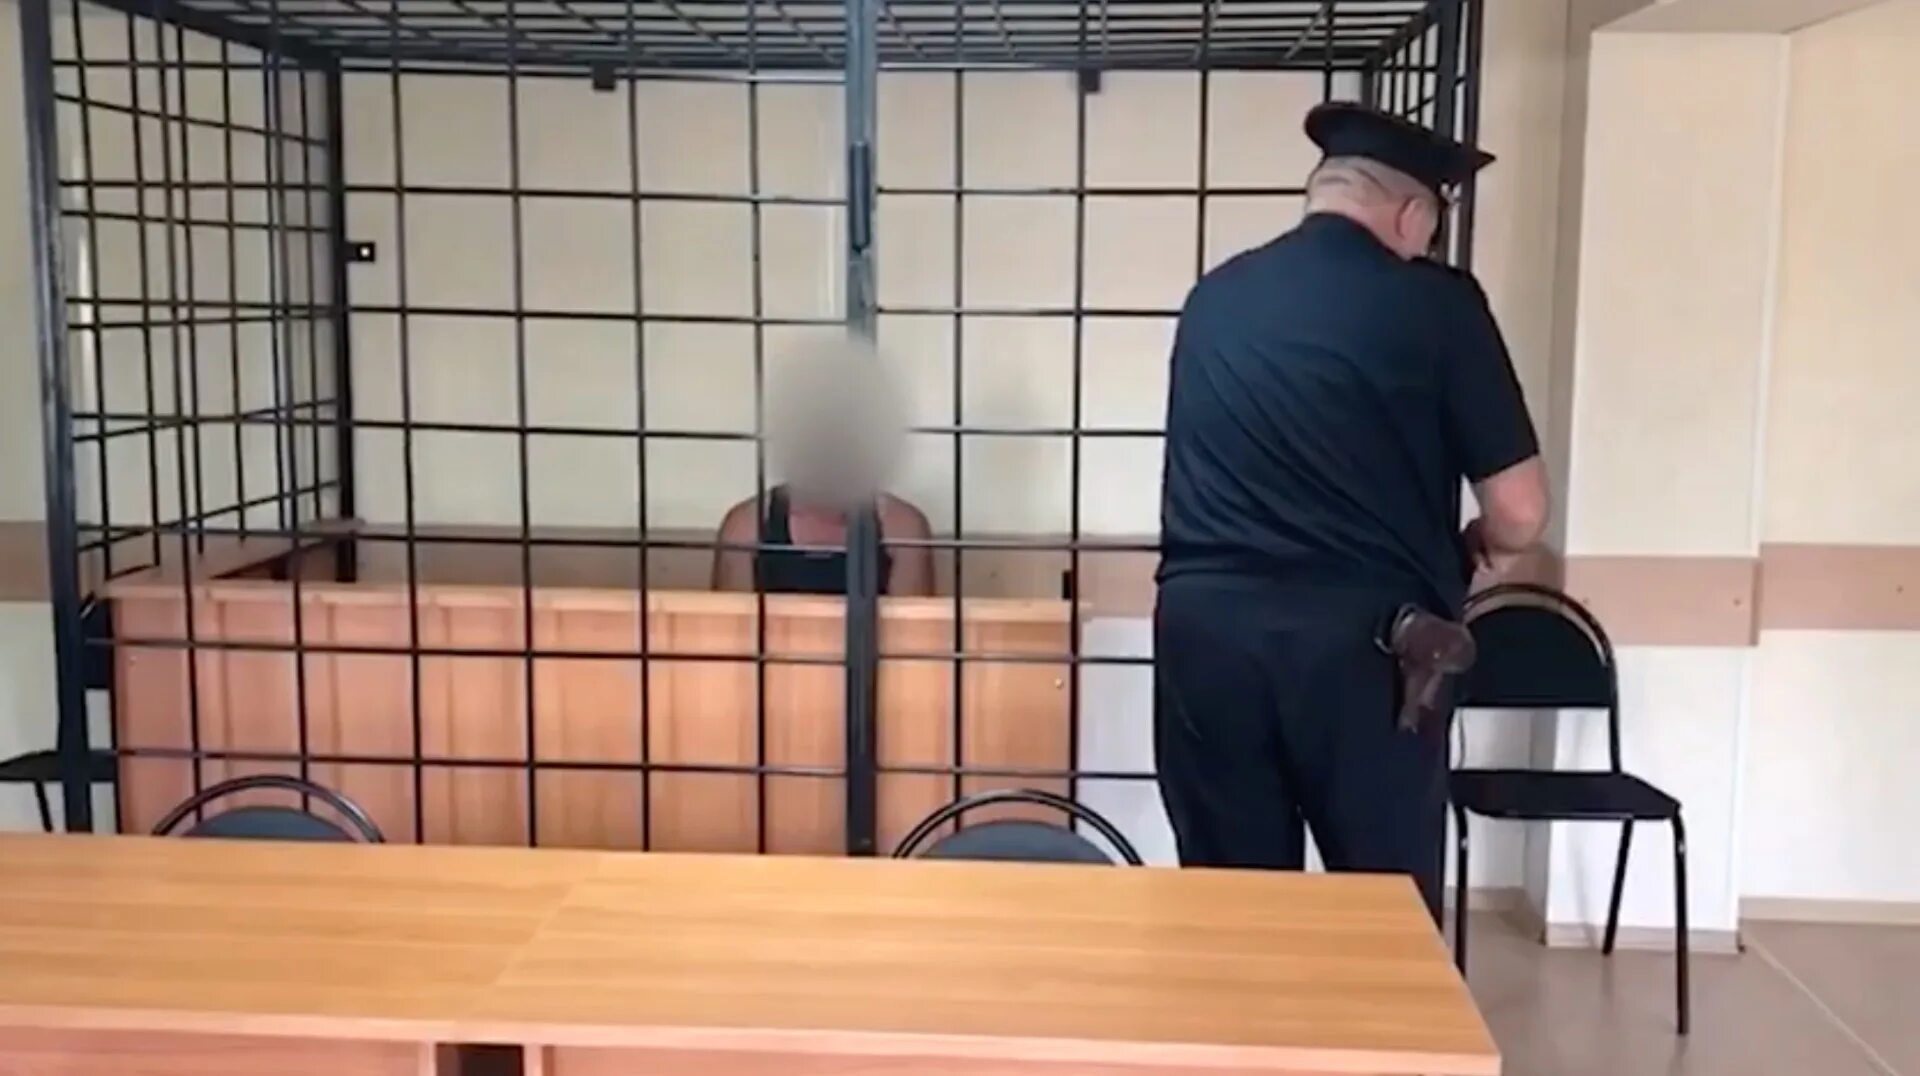 В петербурге забили мужчину. Фотография человека под арестом. Задержание мигранта п. красное на Волге.